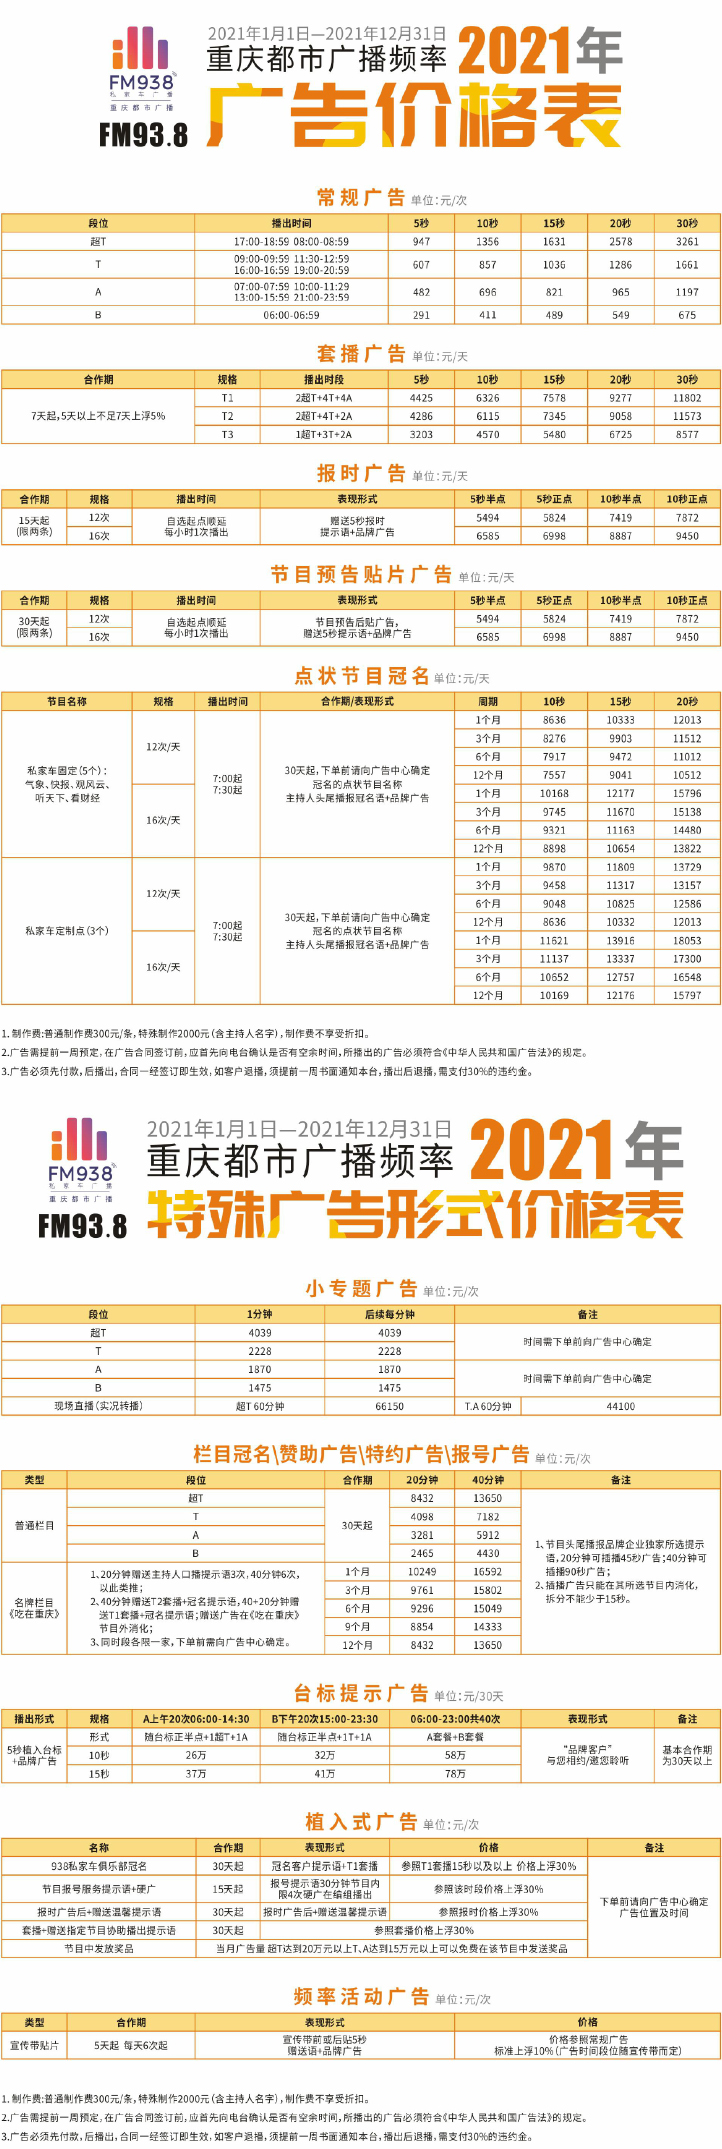 2021重庆人民广播电台都市频率 FM93.8广告报价表.jpg